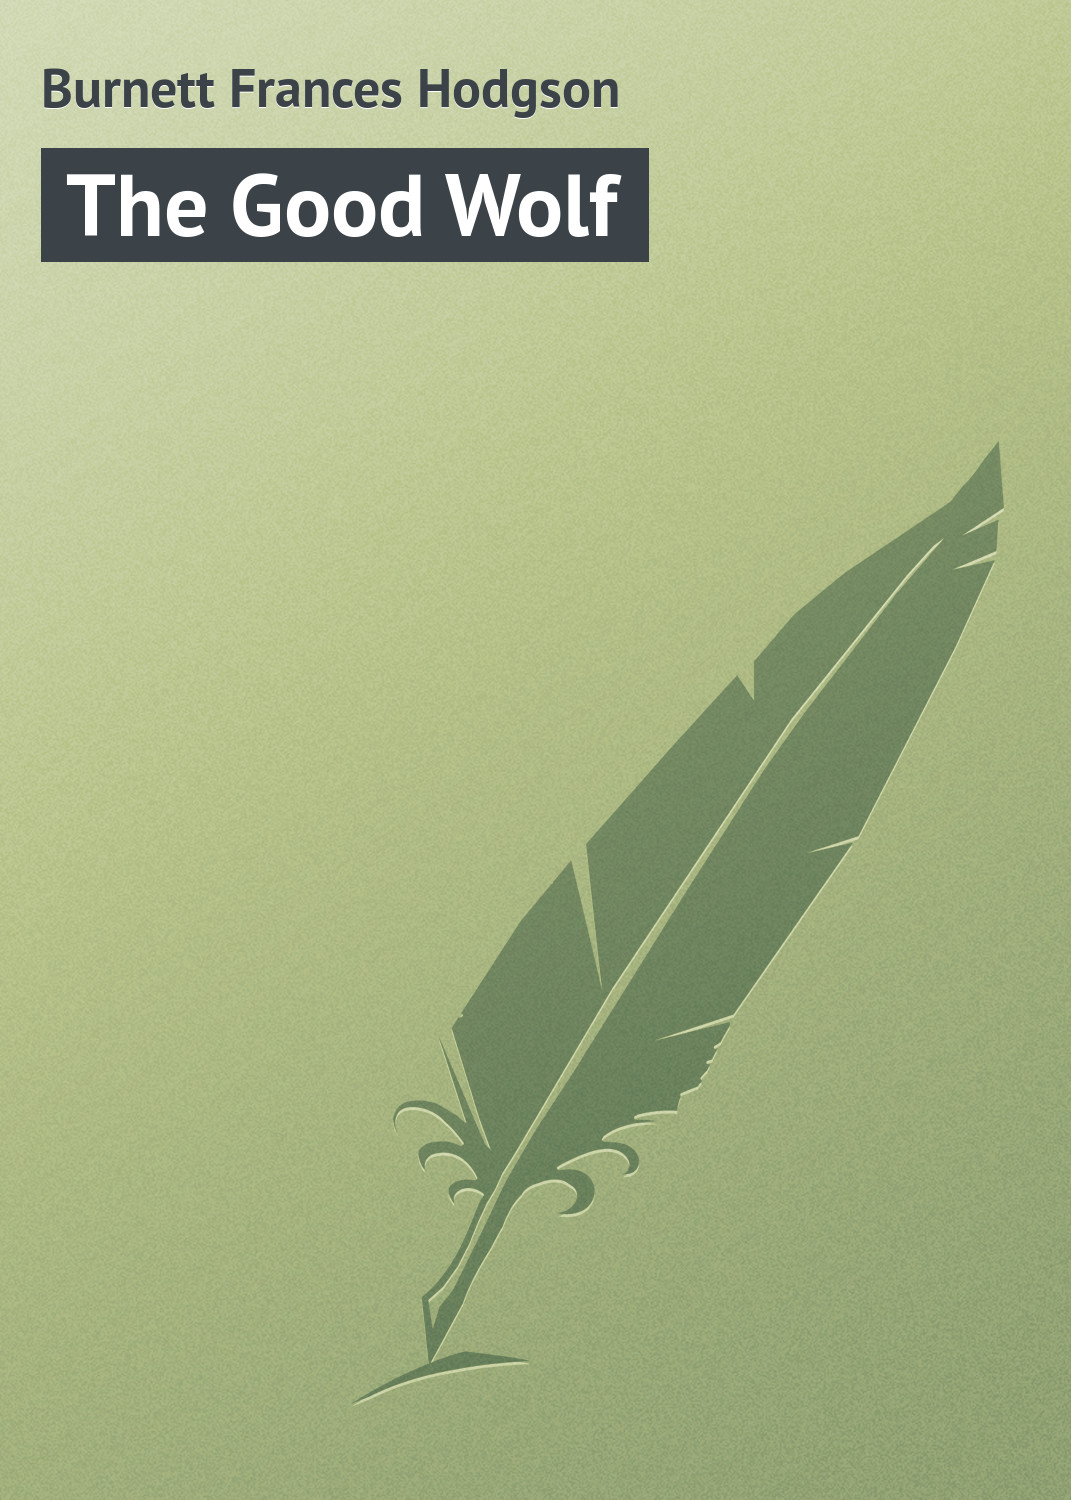 Книга The Good Wolf из серии , созданная Frances Burnett, может относится к жанру Природа и животные, Зарубежная классика, Зарубежные детские книги. Стоимость книги The Good Wolf  с идентификатором 23158555 составляет 5.99 руб.